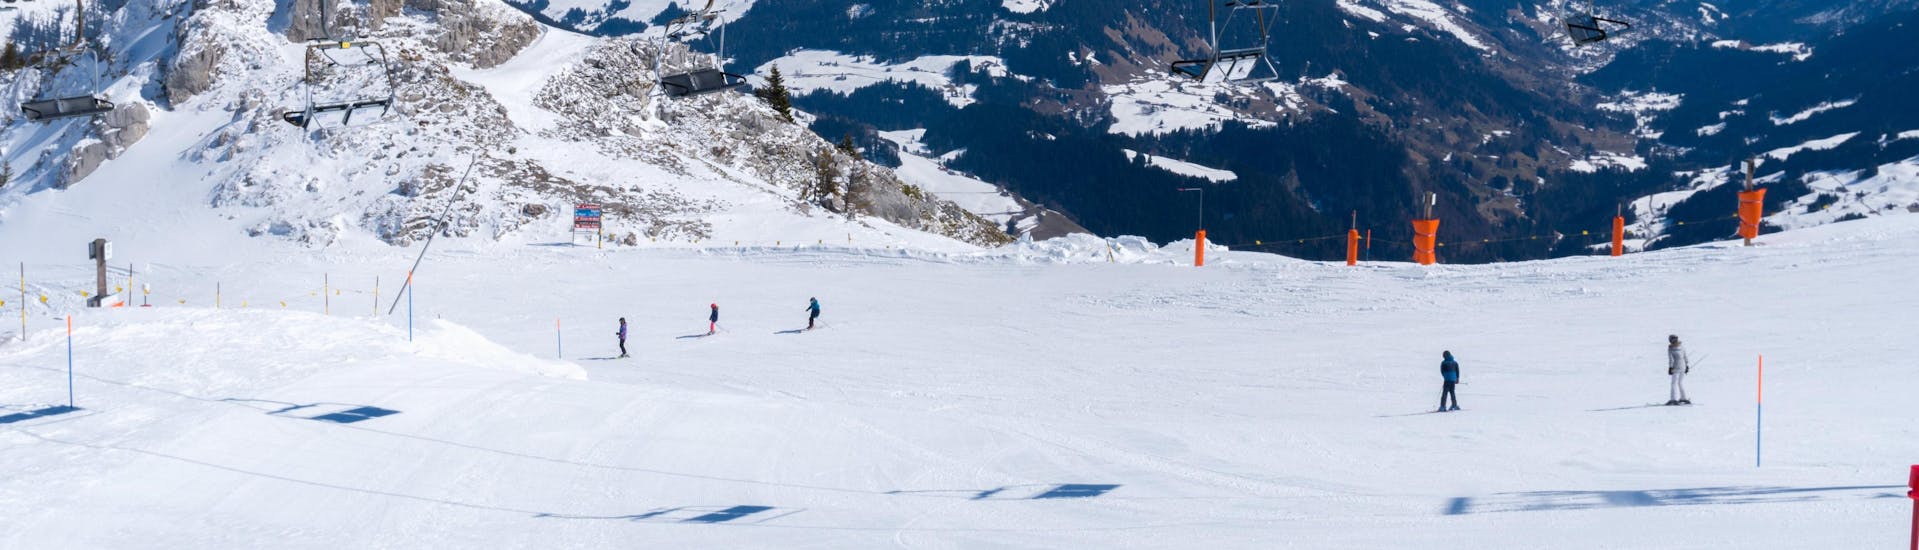 Mehrere Skifahrer nutzen das Pistenangebot im schweizerischen Skigebiet Leysin, einer beliebten Destination für angehende Skifahrer in der sie bei einer der örtlichen Skischulen einen Skikurs buchen können.